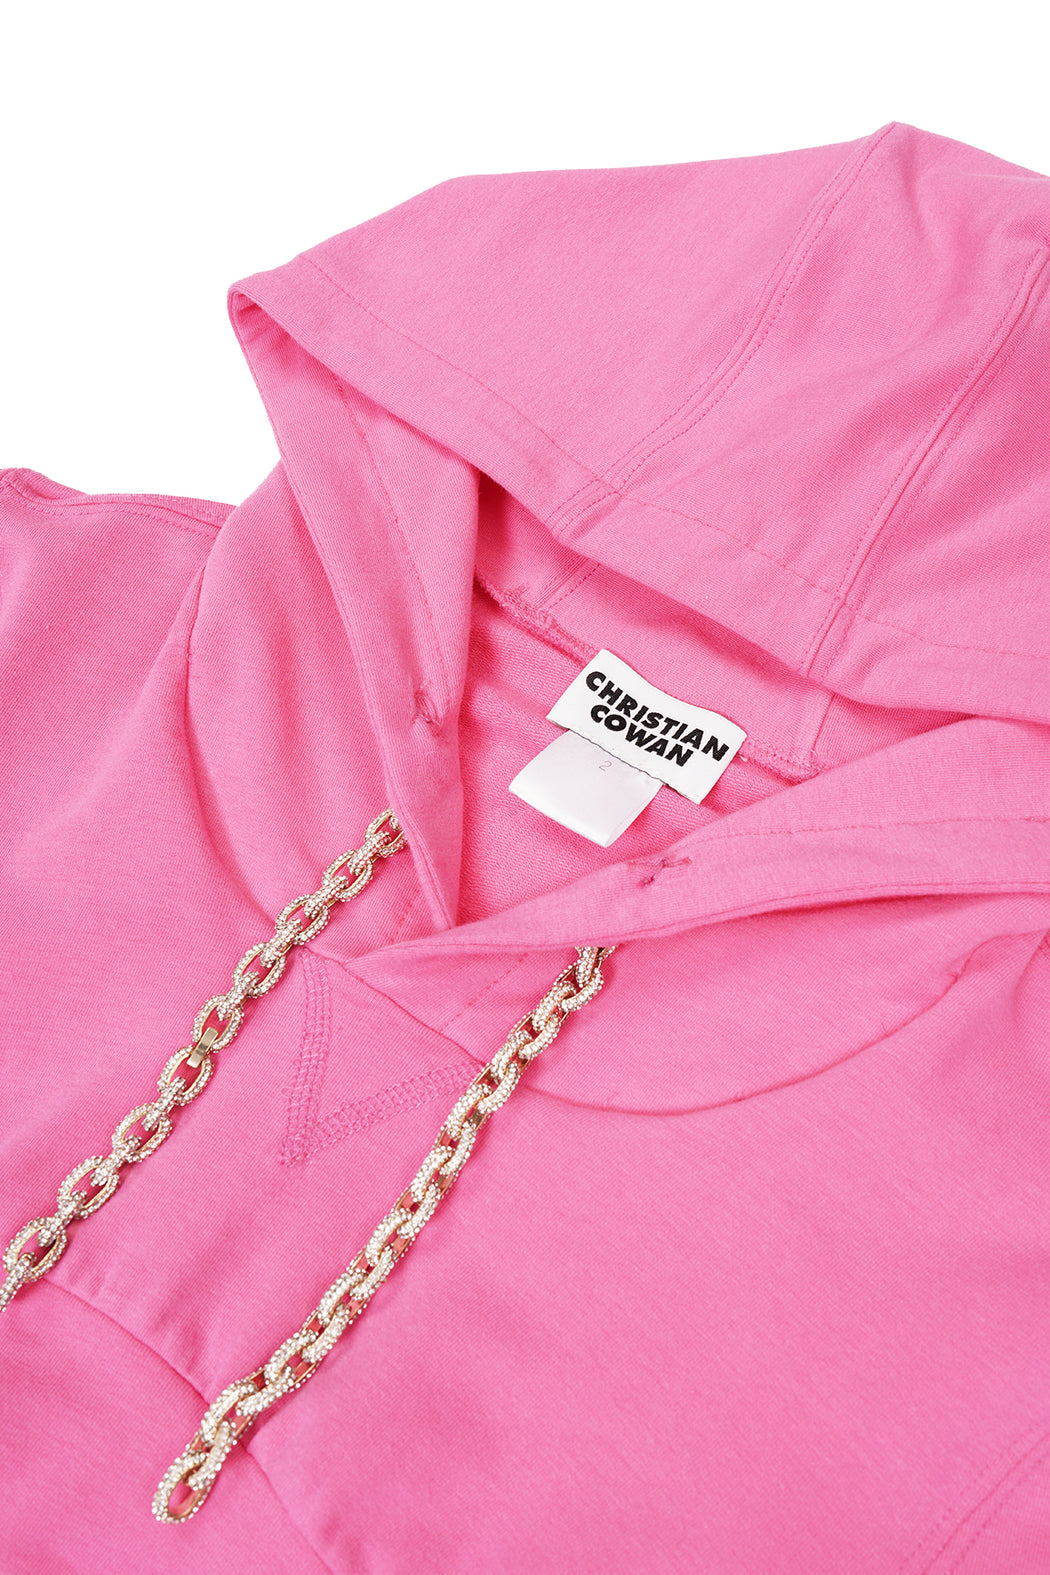 Cropped Sweatshirt - Pink